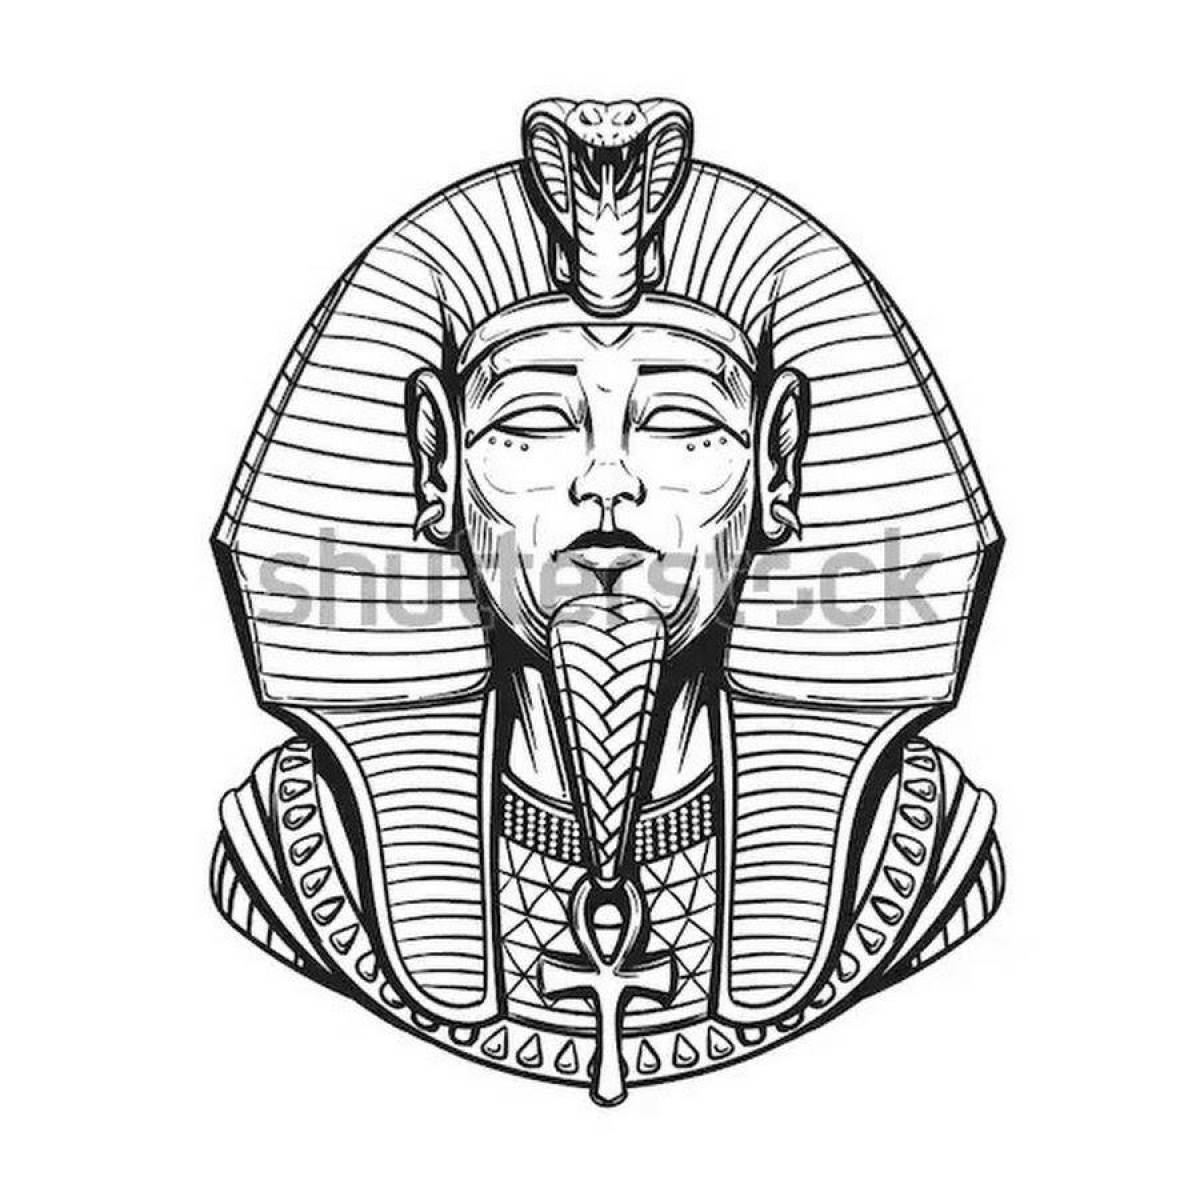 Coloring page elegant pharaoh mask